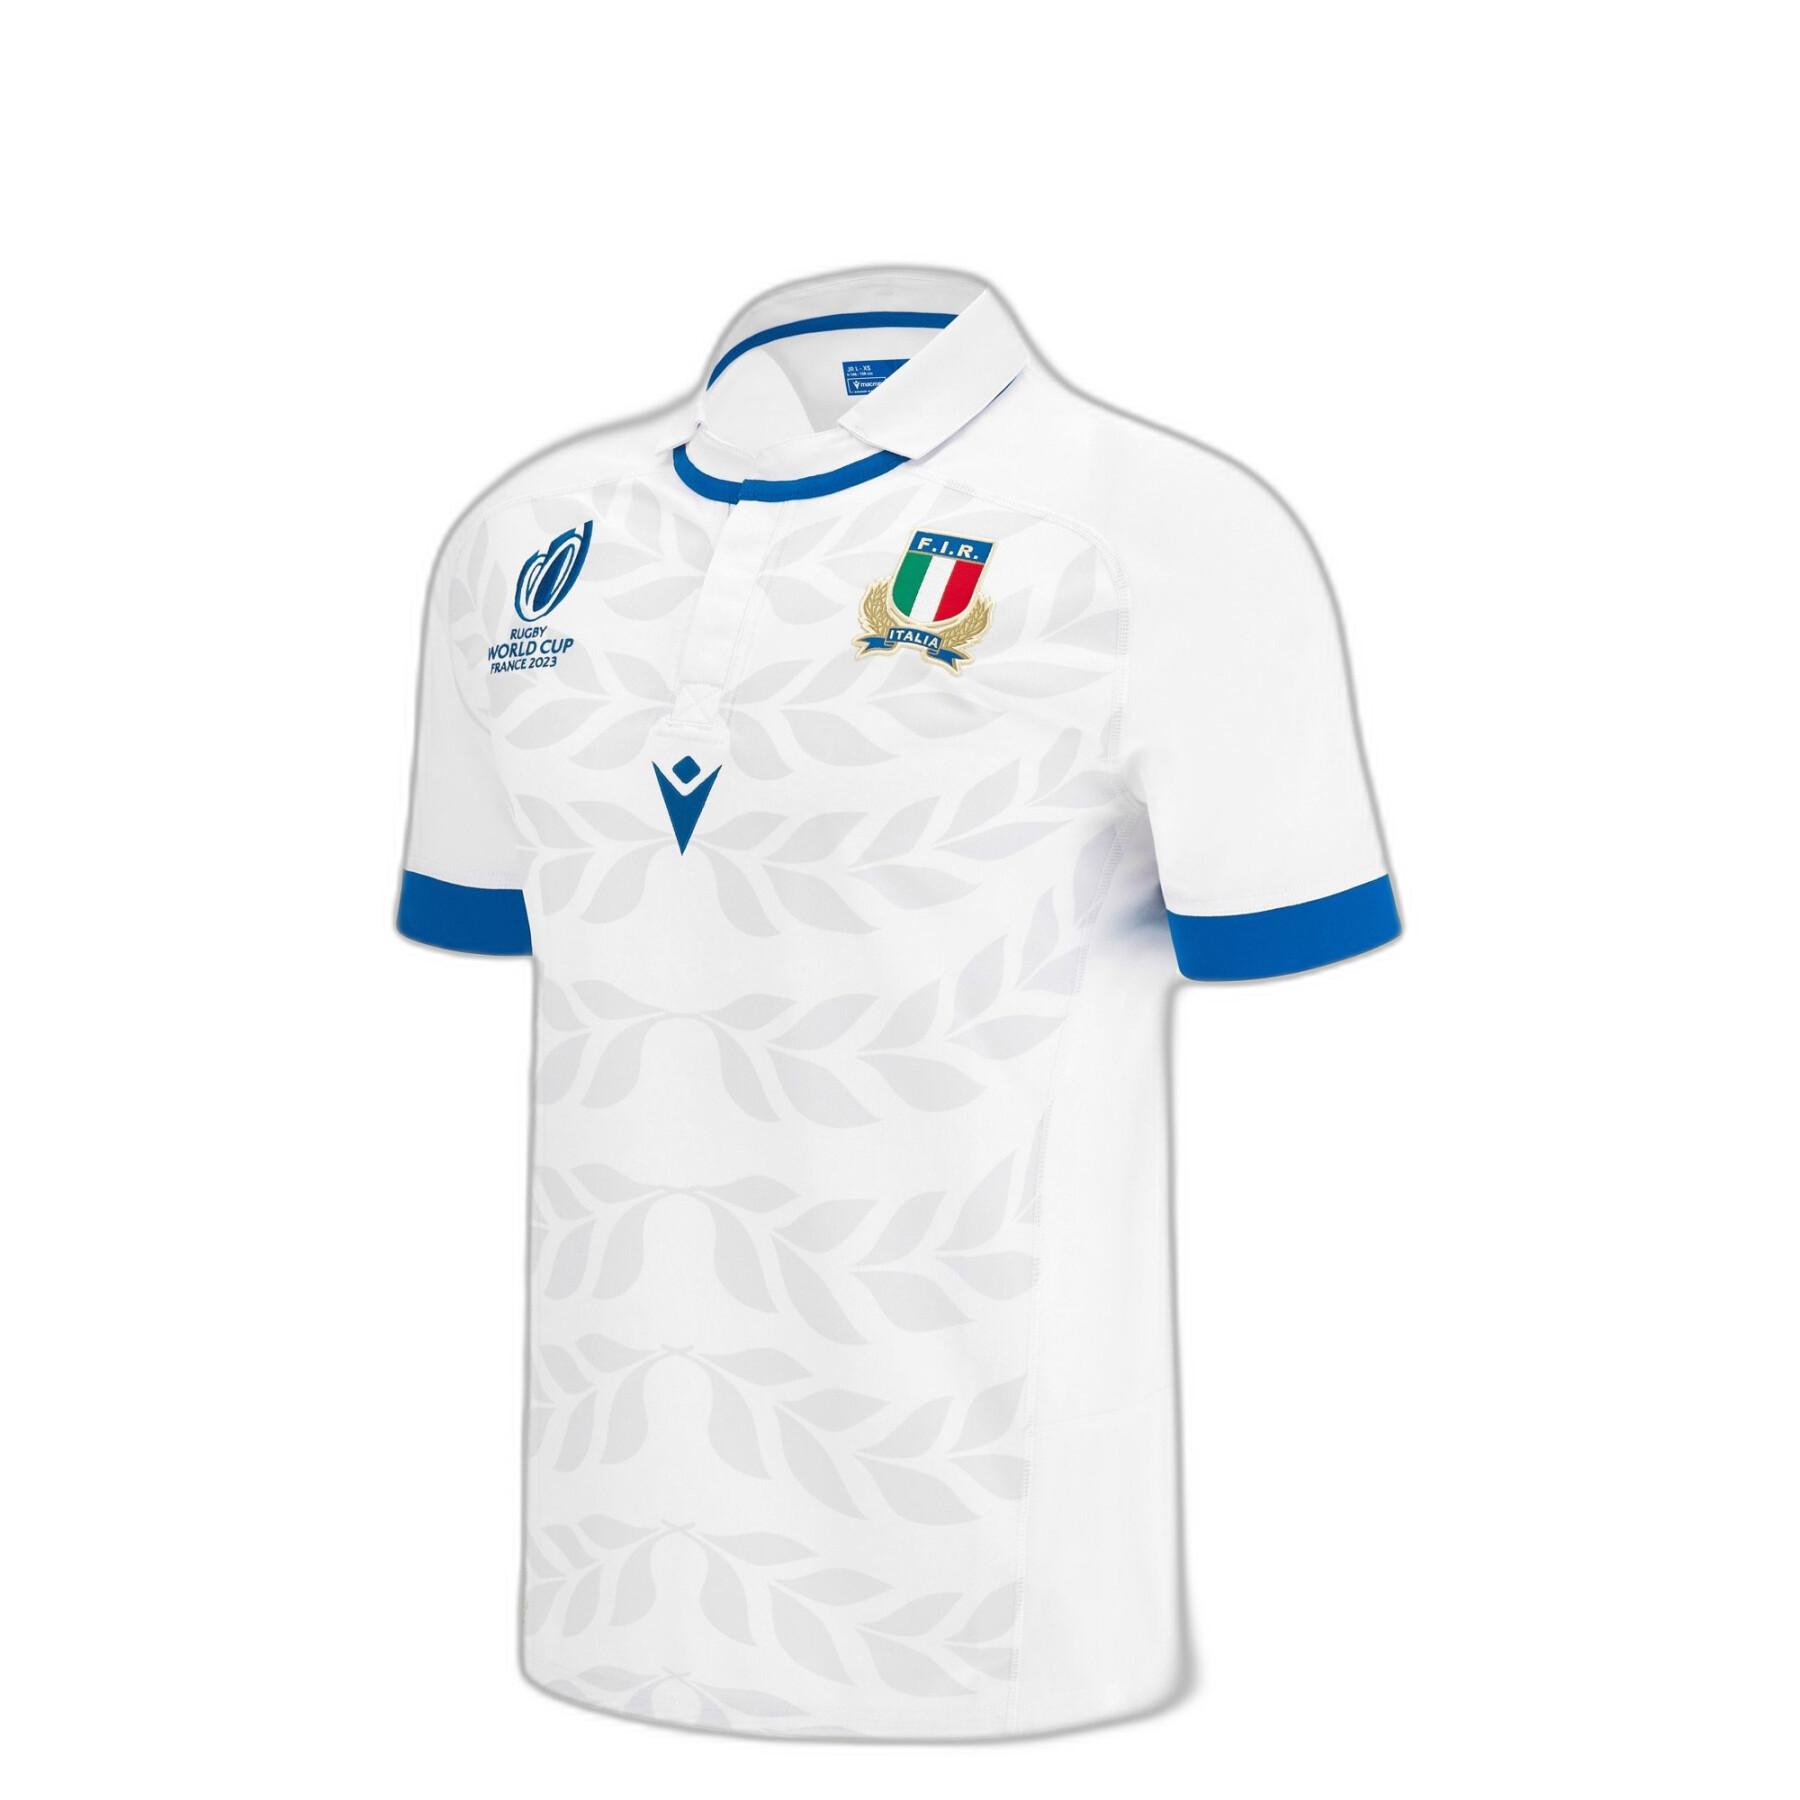 Children's outdoor jersey Italie RWC 2023